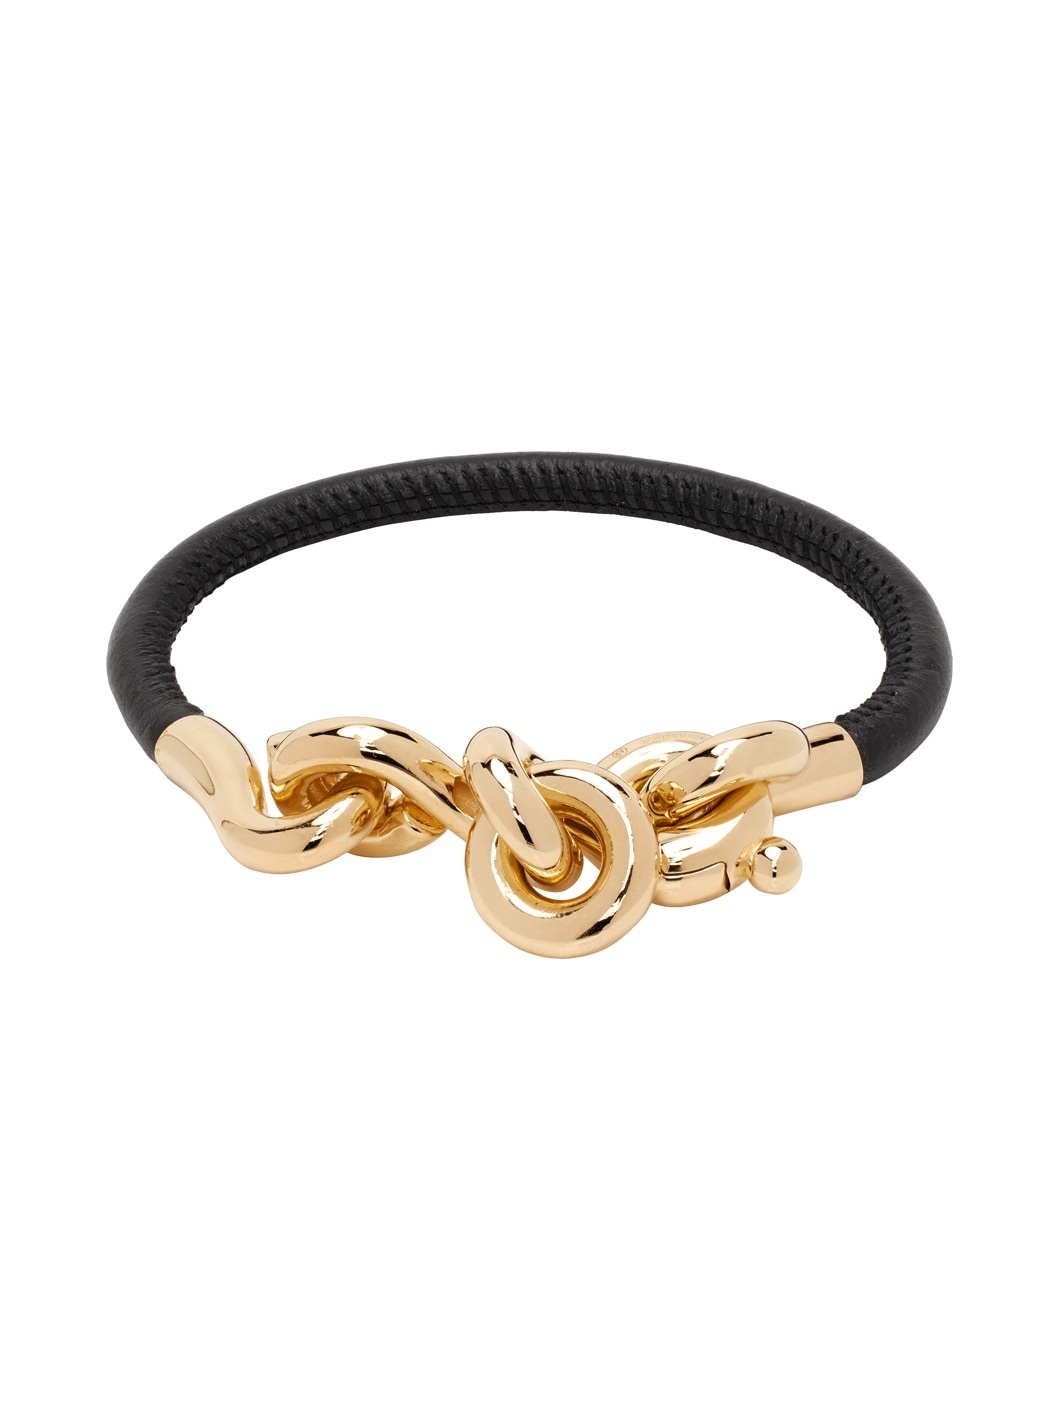 Black Loop Leather Bracelet - 2